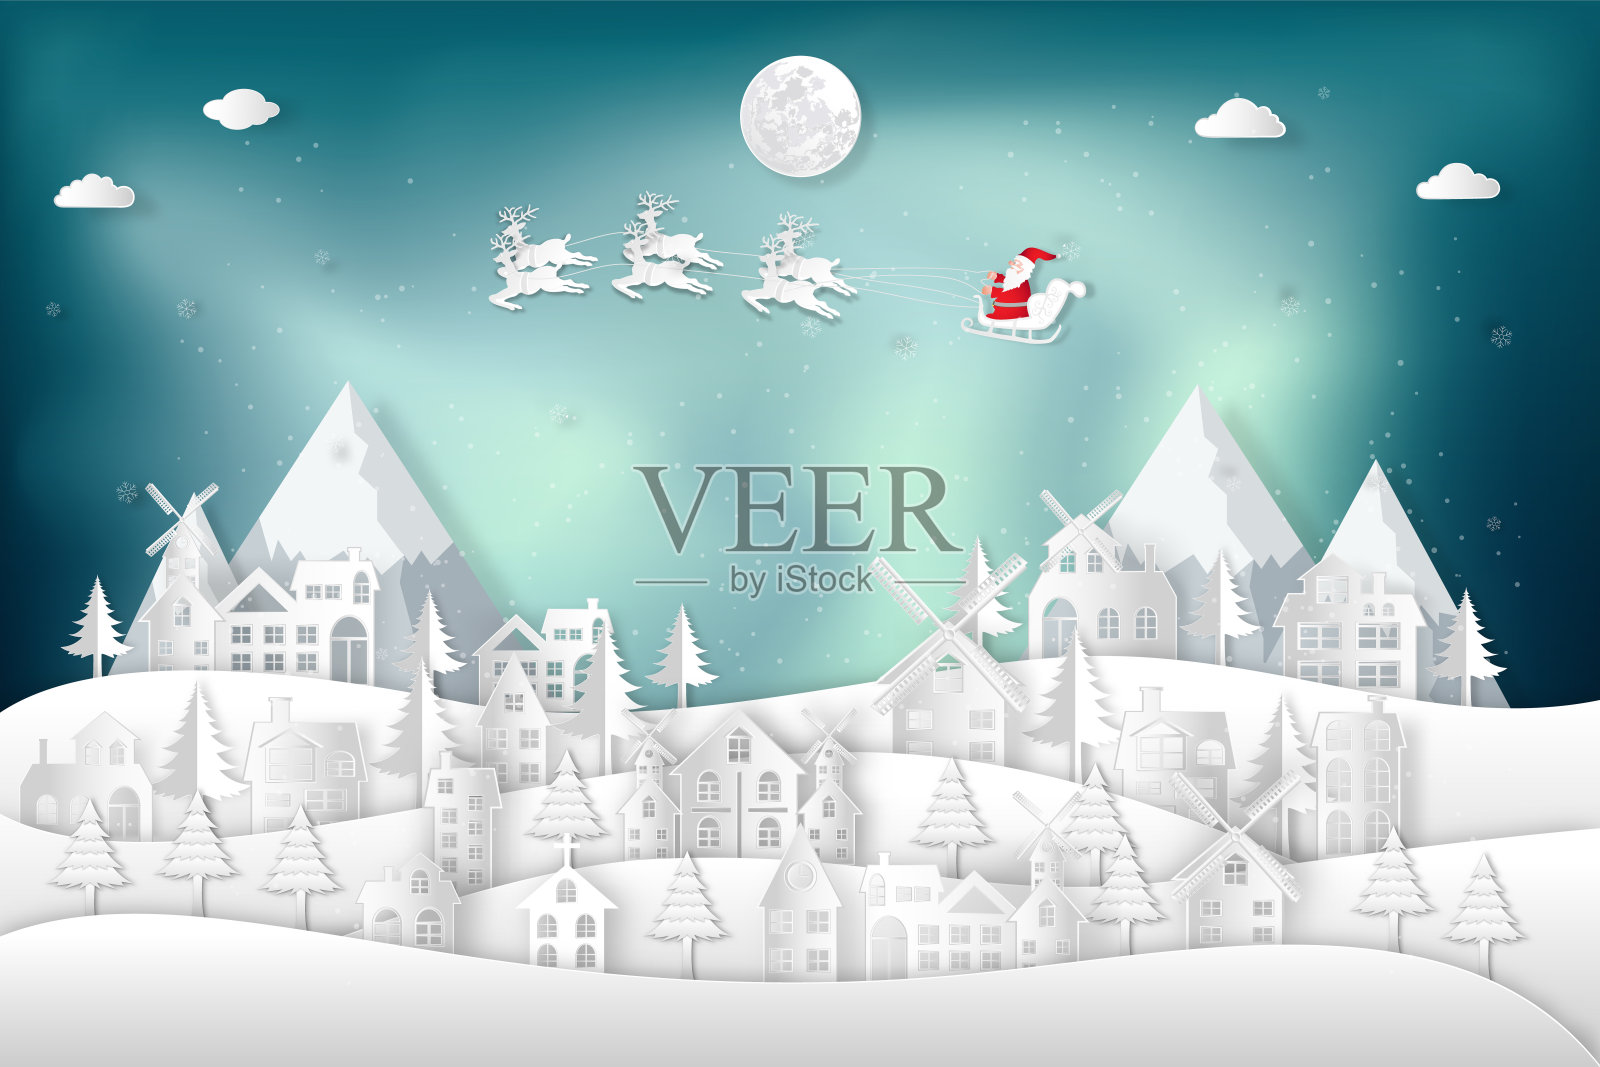 纸艺术，剪纸和数码工艺风格的圣诞老人在雪橇和驯鹿在冬季的雪村背景作为节日和圣诞节的概念。矢量插图。插画图片素材